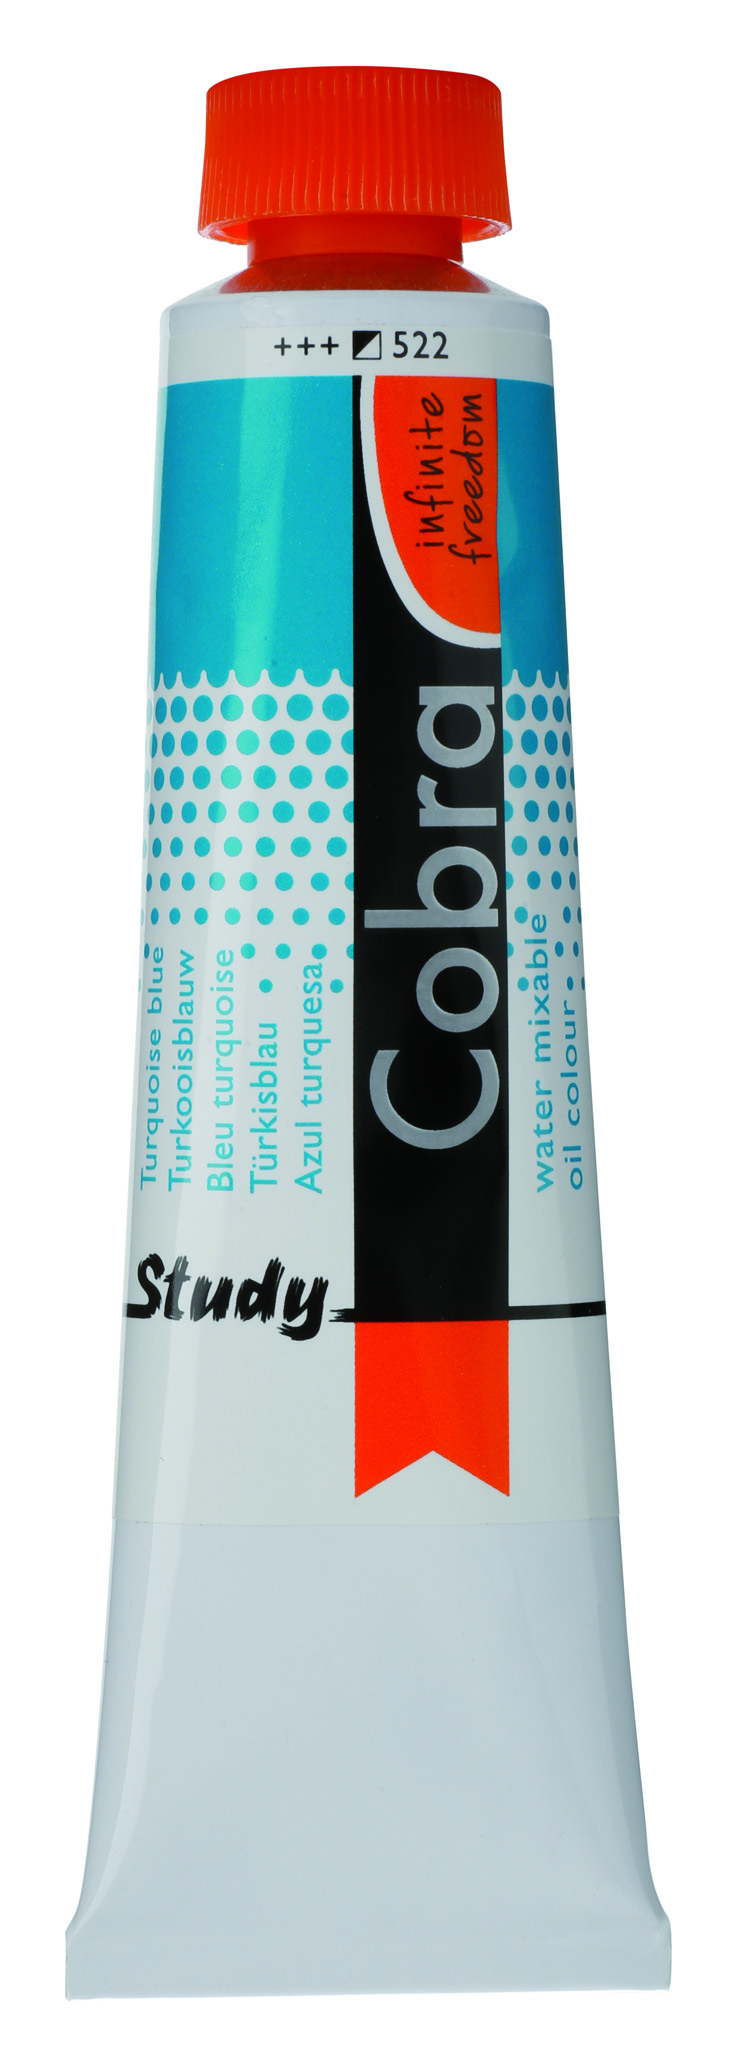 COBRA H2Oil STUDENT 40 ml, prussian blue